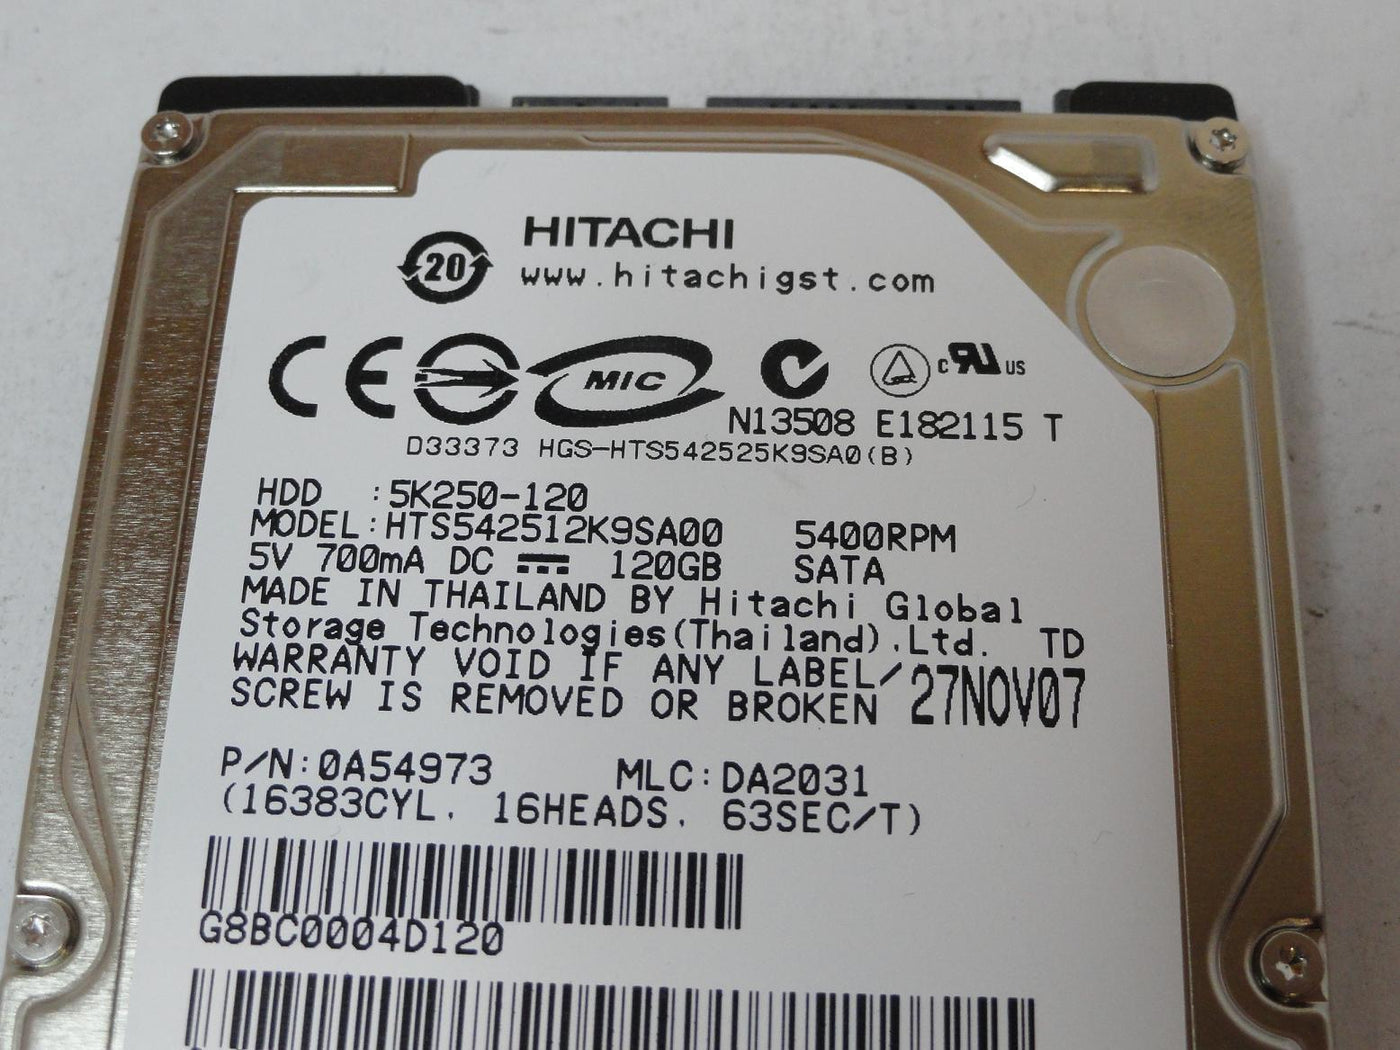 PR23985_0A54973_Hitachi 120GB SATA 5400rpm 2.5in HDD - Image3